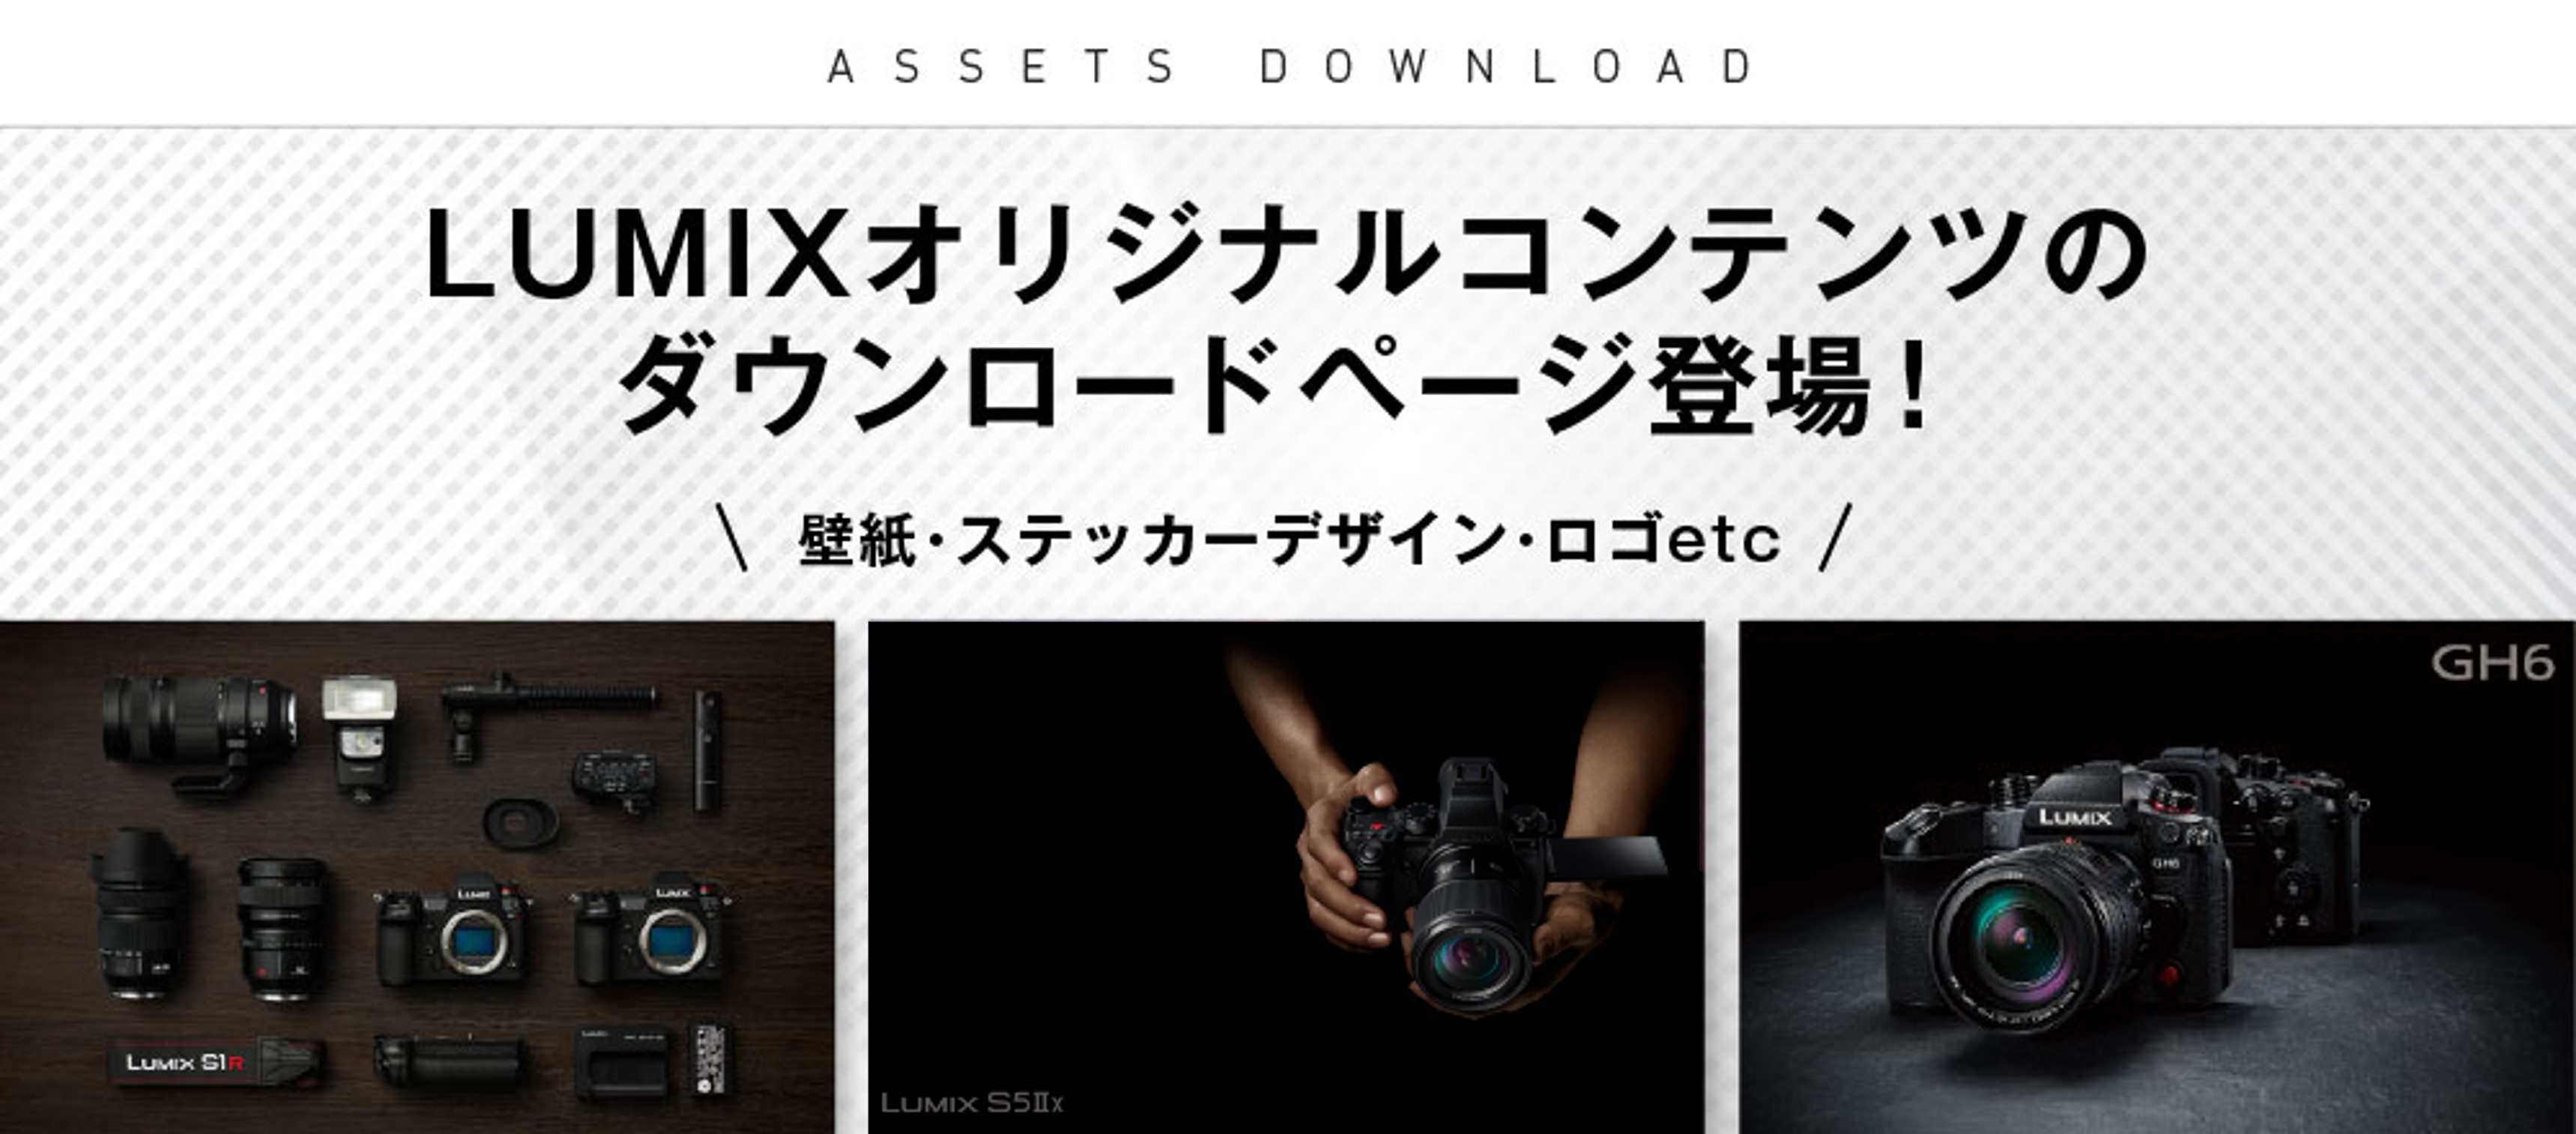 LUMIXオリジナルコンテンツのダウンロードページ登場！